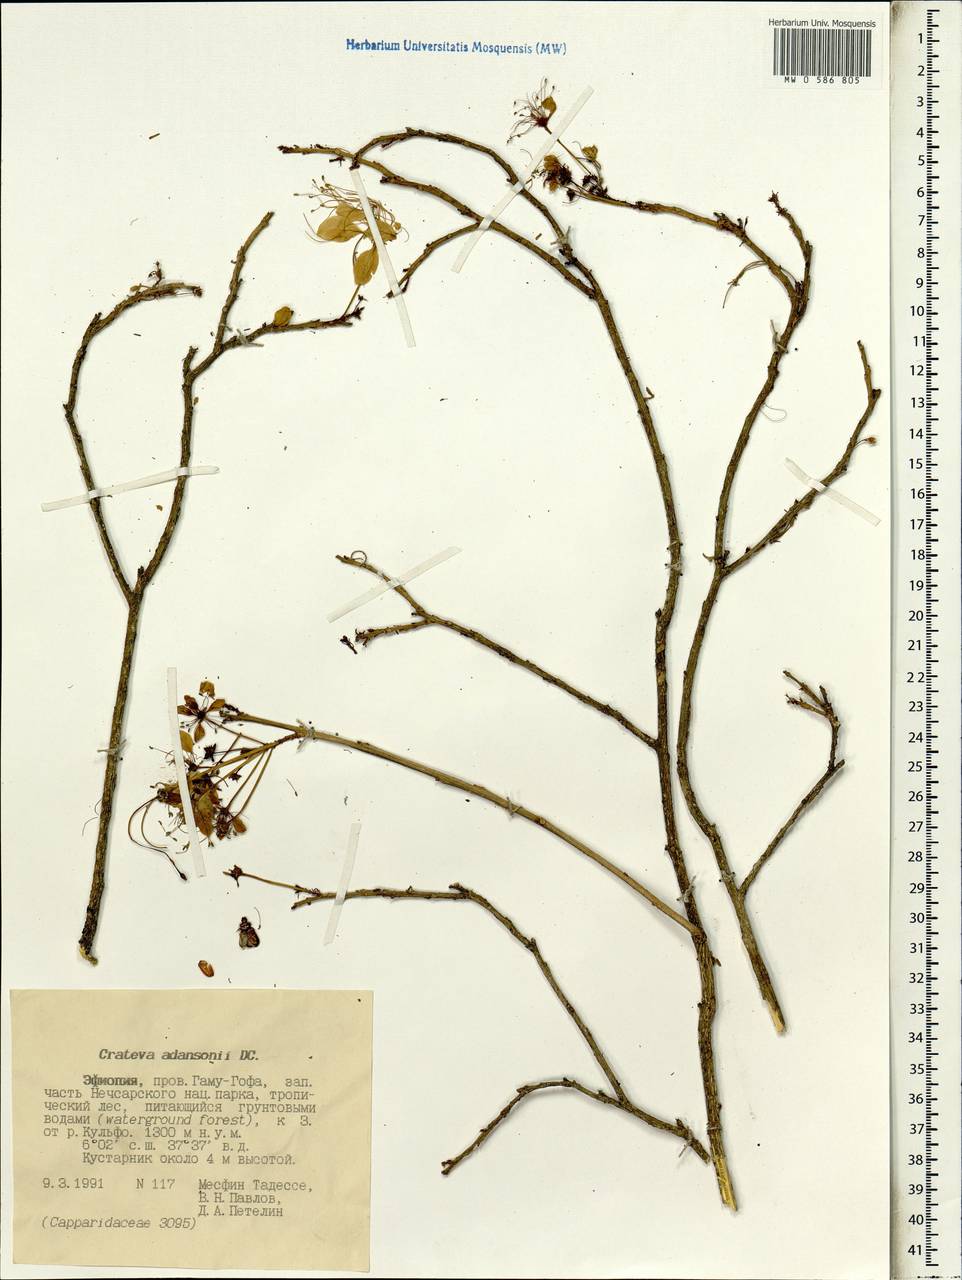 Crateva adansonii, Африка (AFR) (Эфиопия)